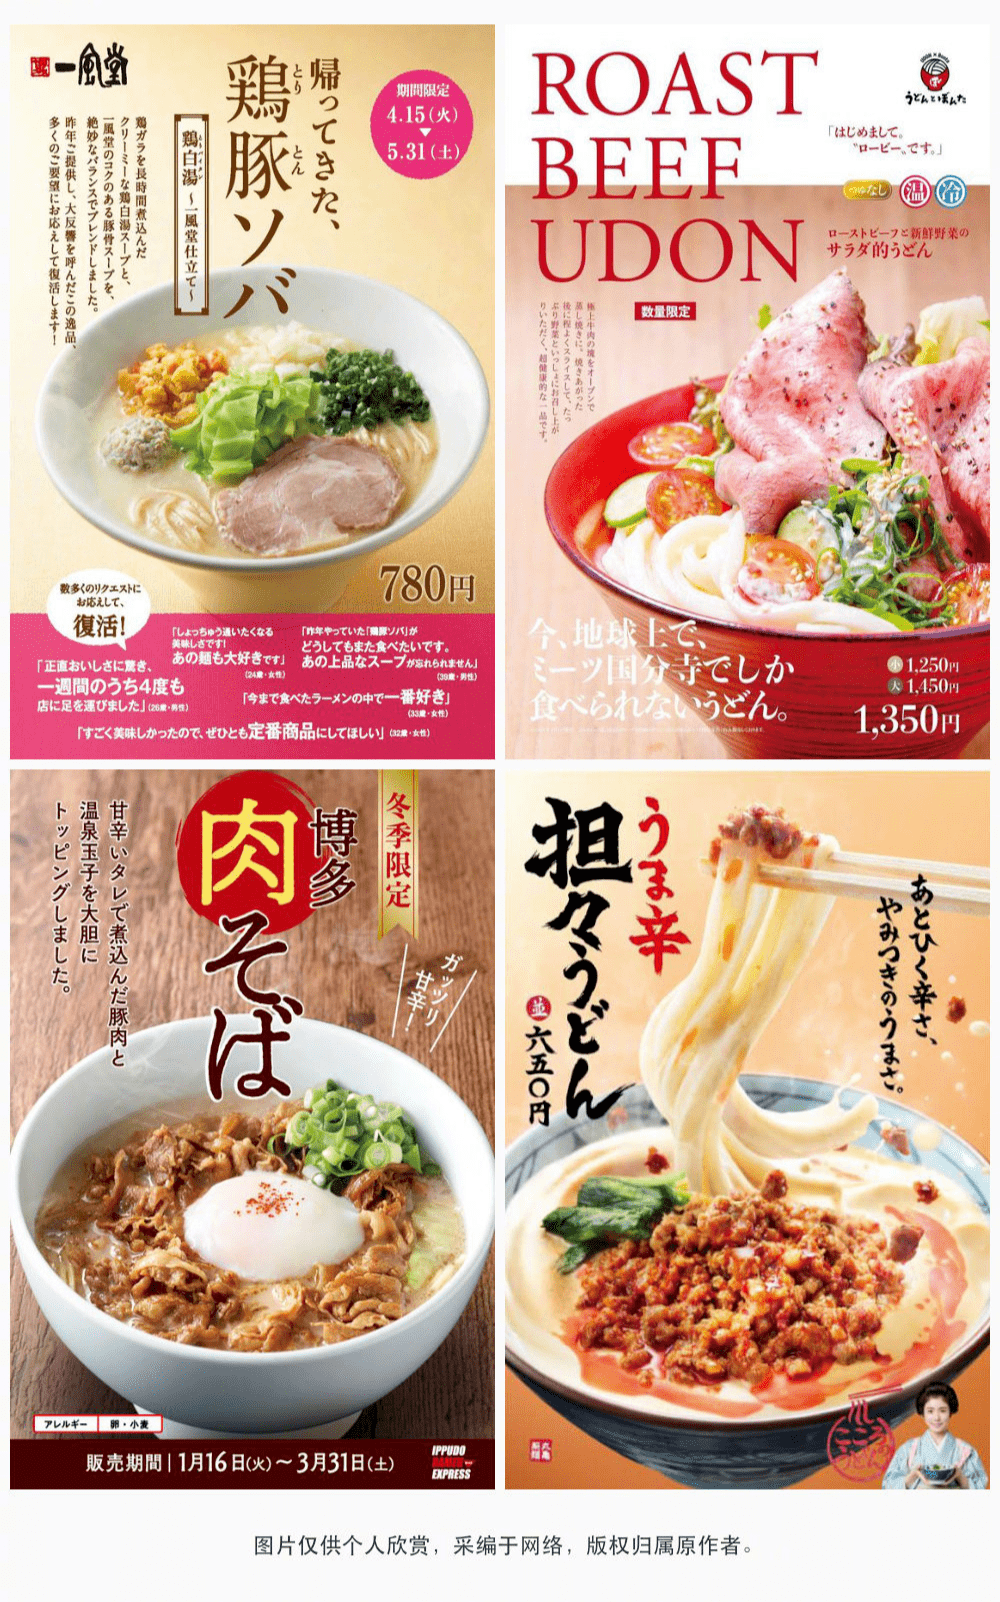 海报| 32款秀色可餐的日式拉面海报设计